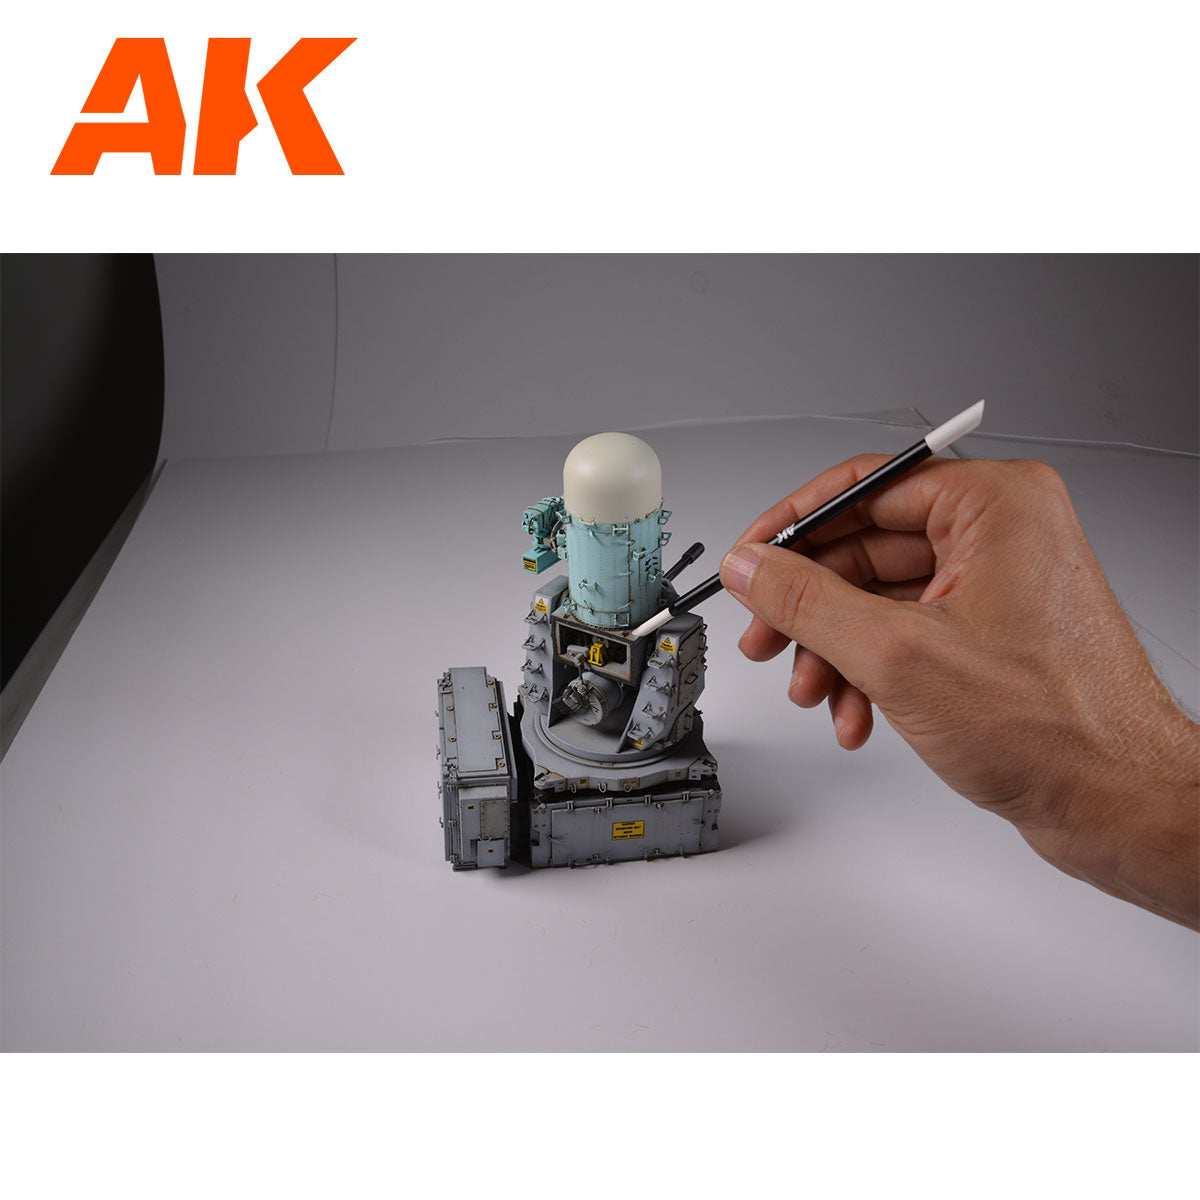 AK Interactive Rubbing Stick 3-5mm Tip  AKI9317